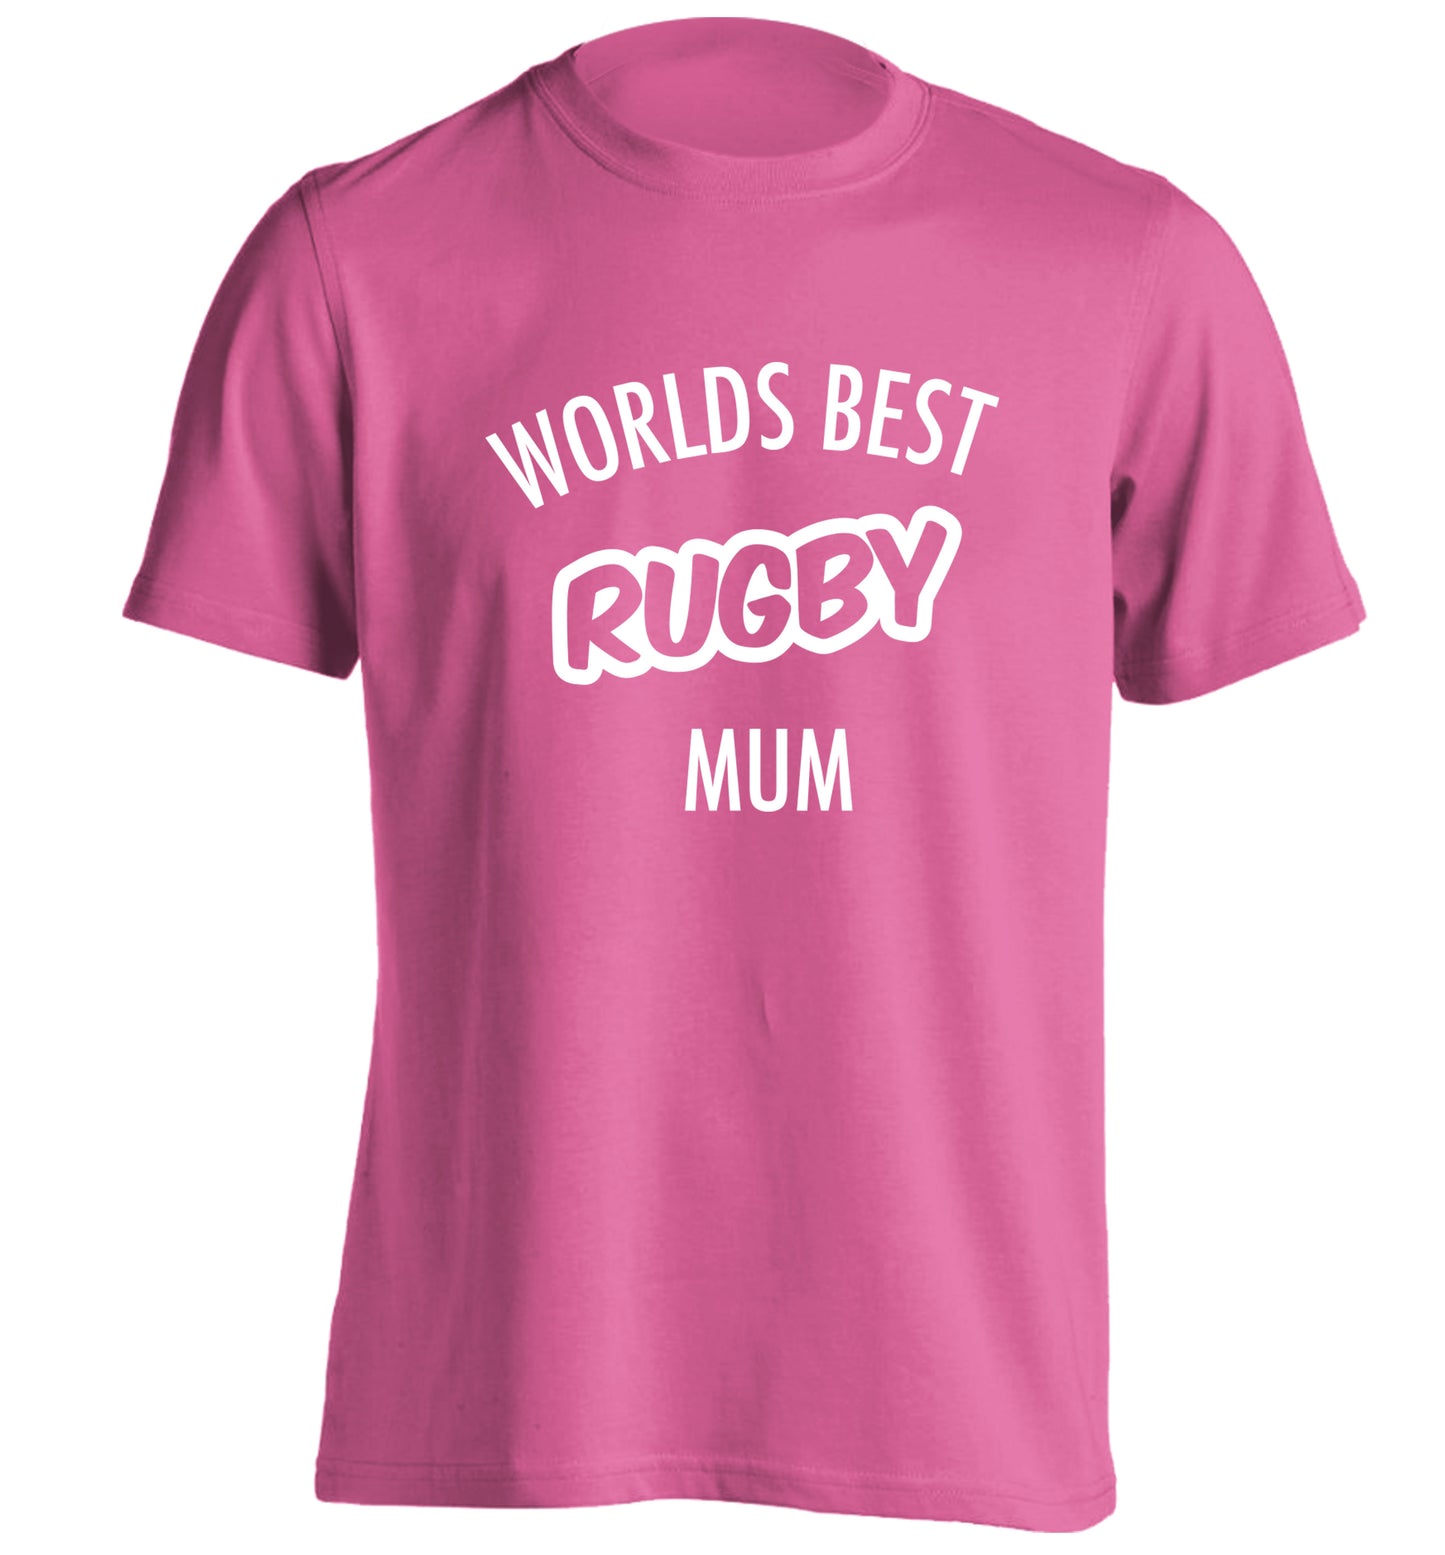 Worlds best rugby mum adults unisex pink Tshirt 2XL